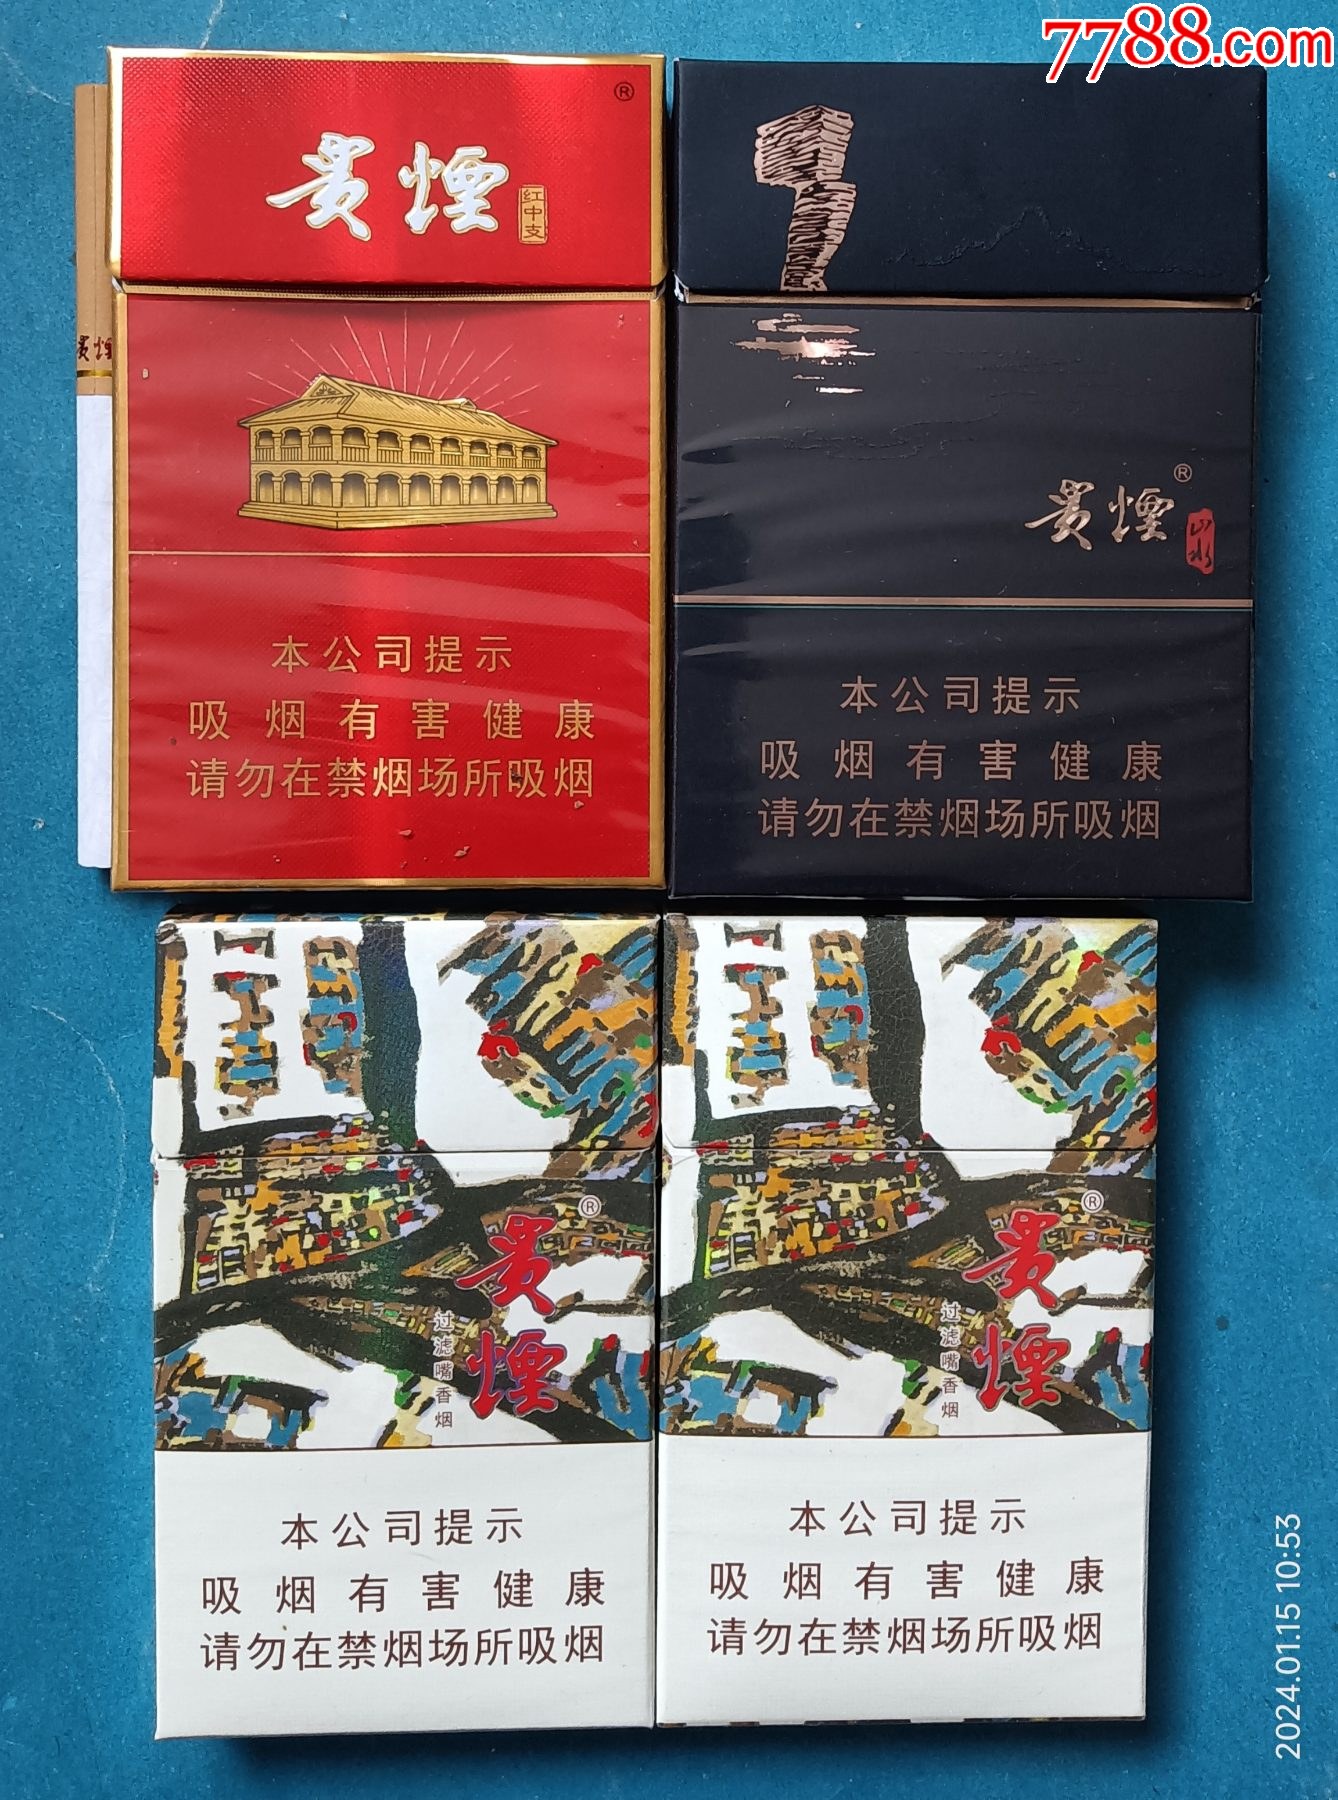 贵烟烟标4种红中支含1烟山水萃尽早劝阻贵州中烟工业有限责任公司